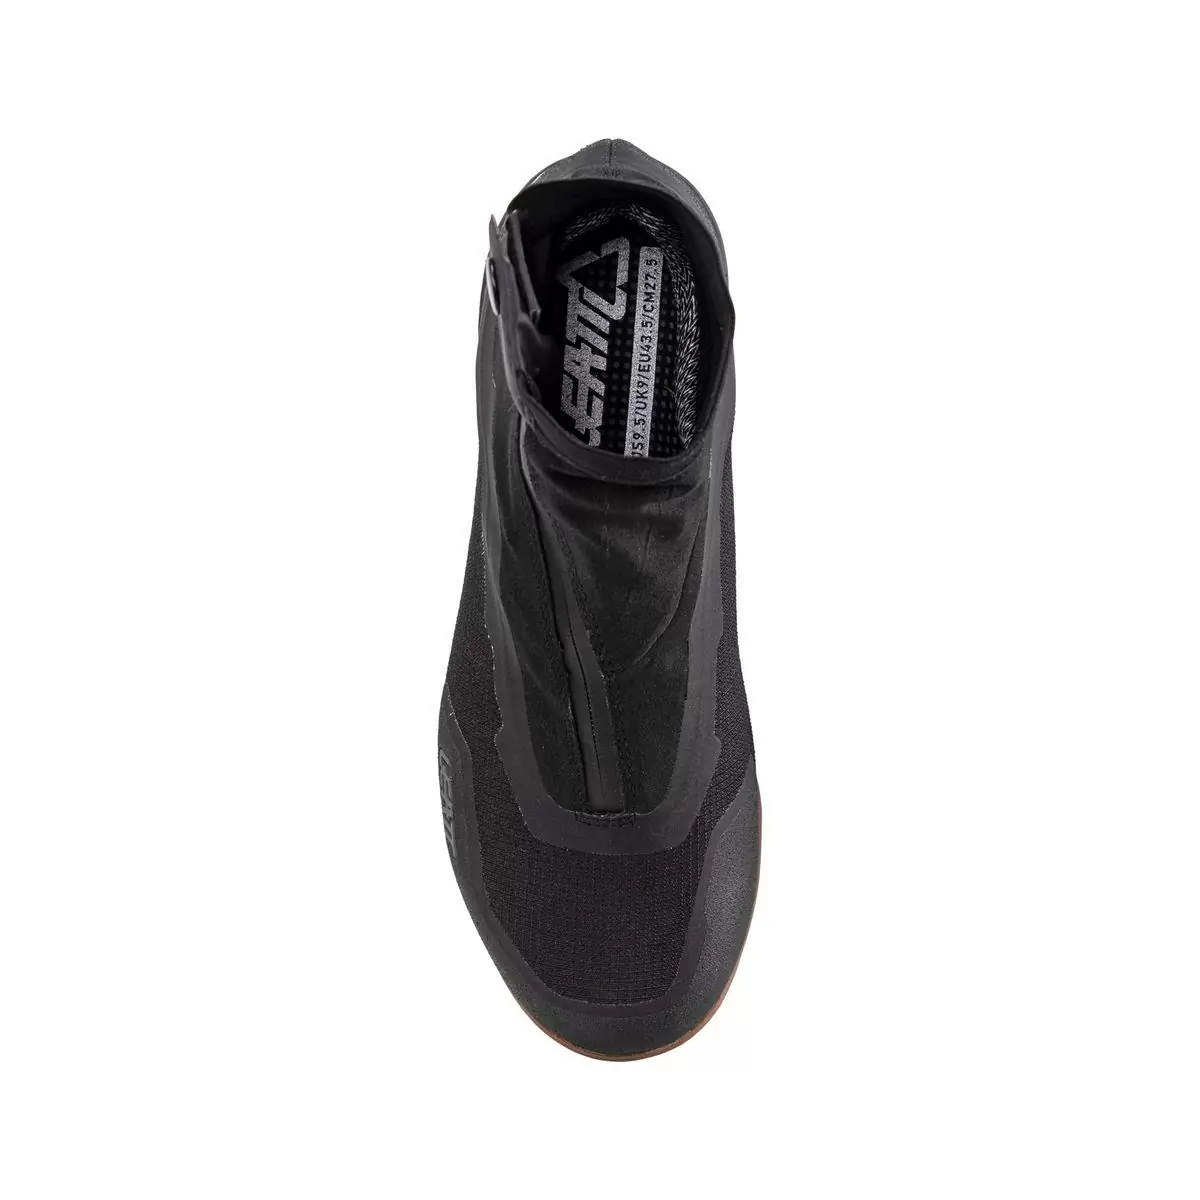 Zapatillas MTB Impermeables 7.0 HydraDri Clip Negro Talla 44.5 #2